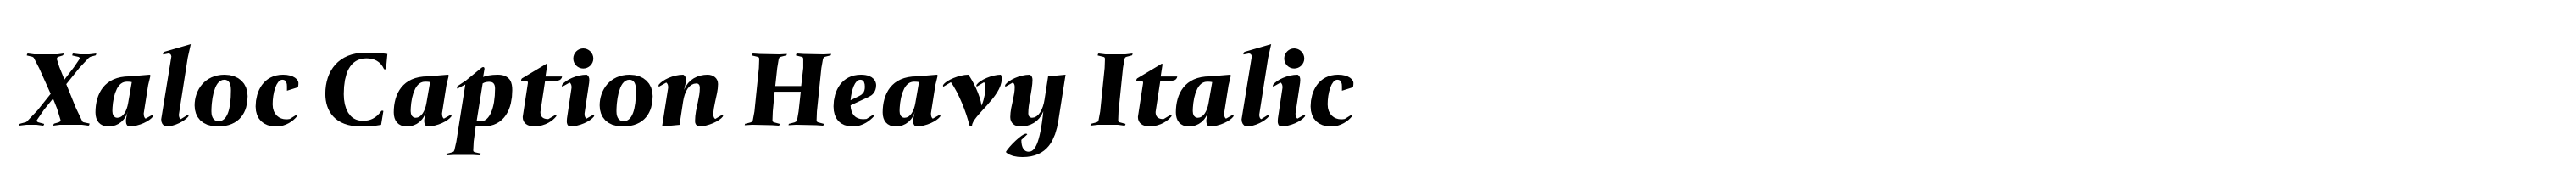 Xaloc Caption Heavy Italic